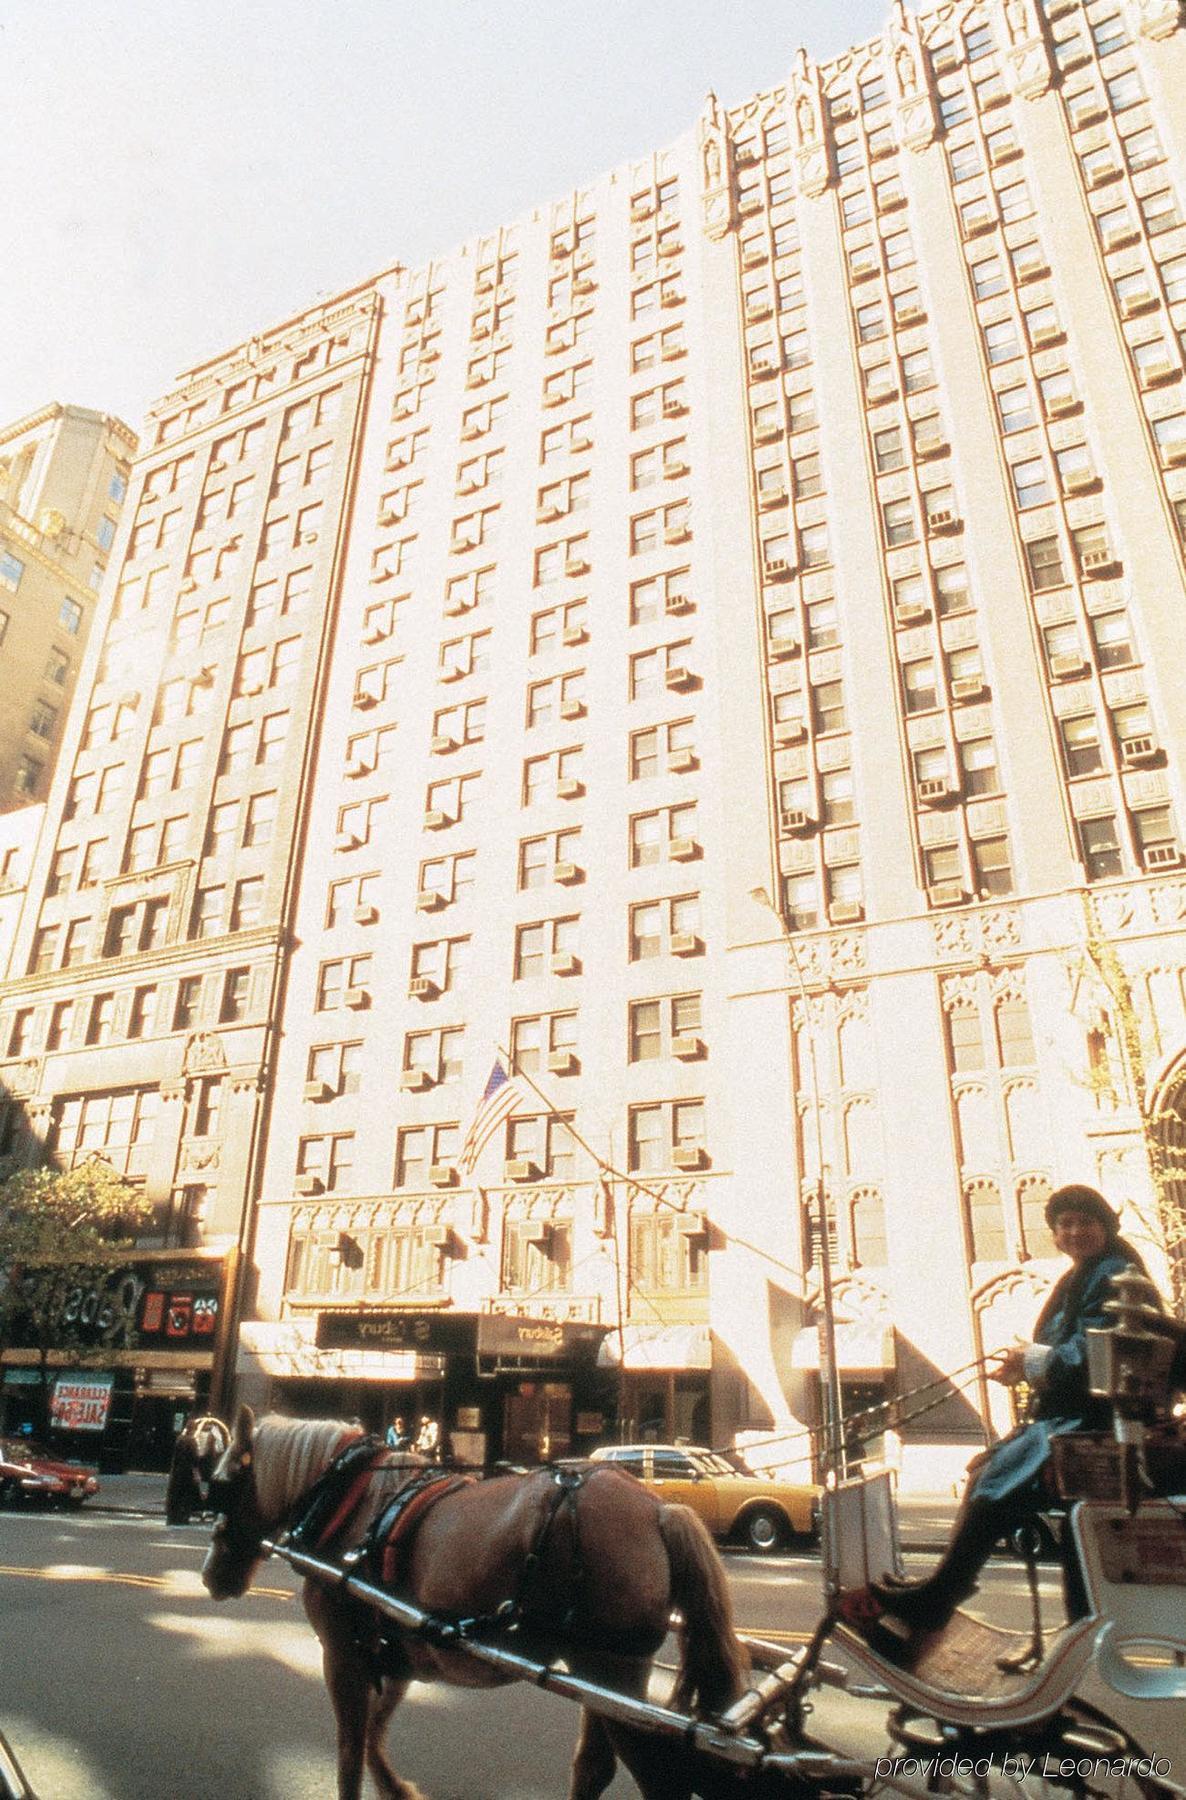 Salisbury Hotel Nueva York Exterior foto